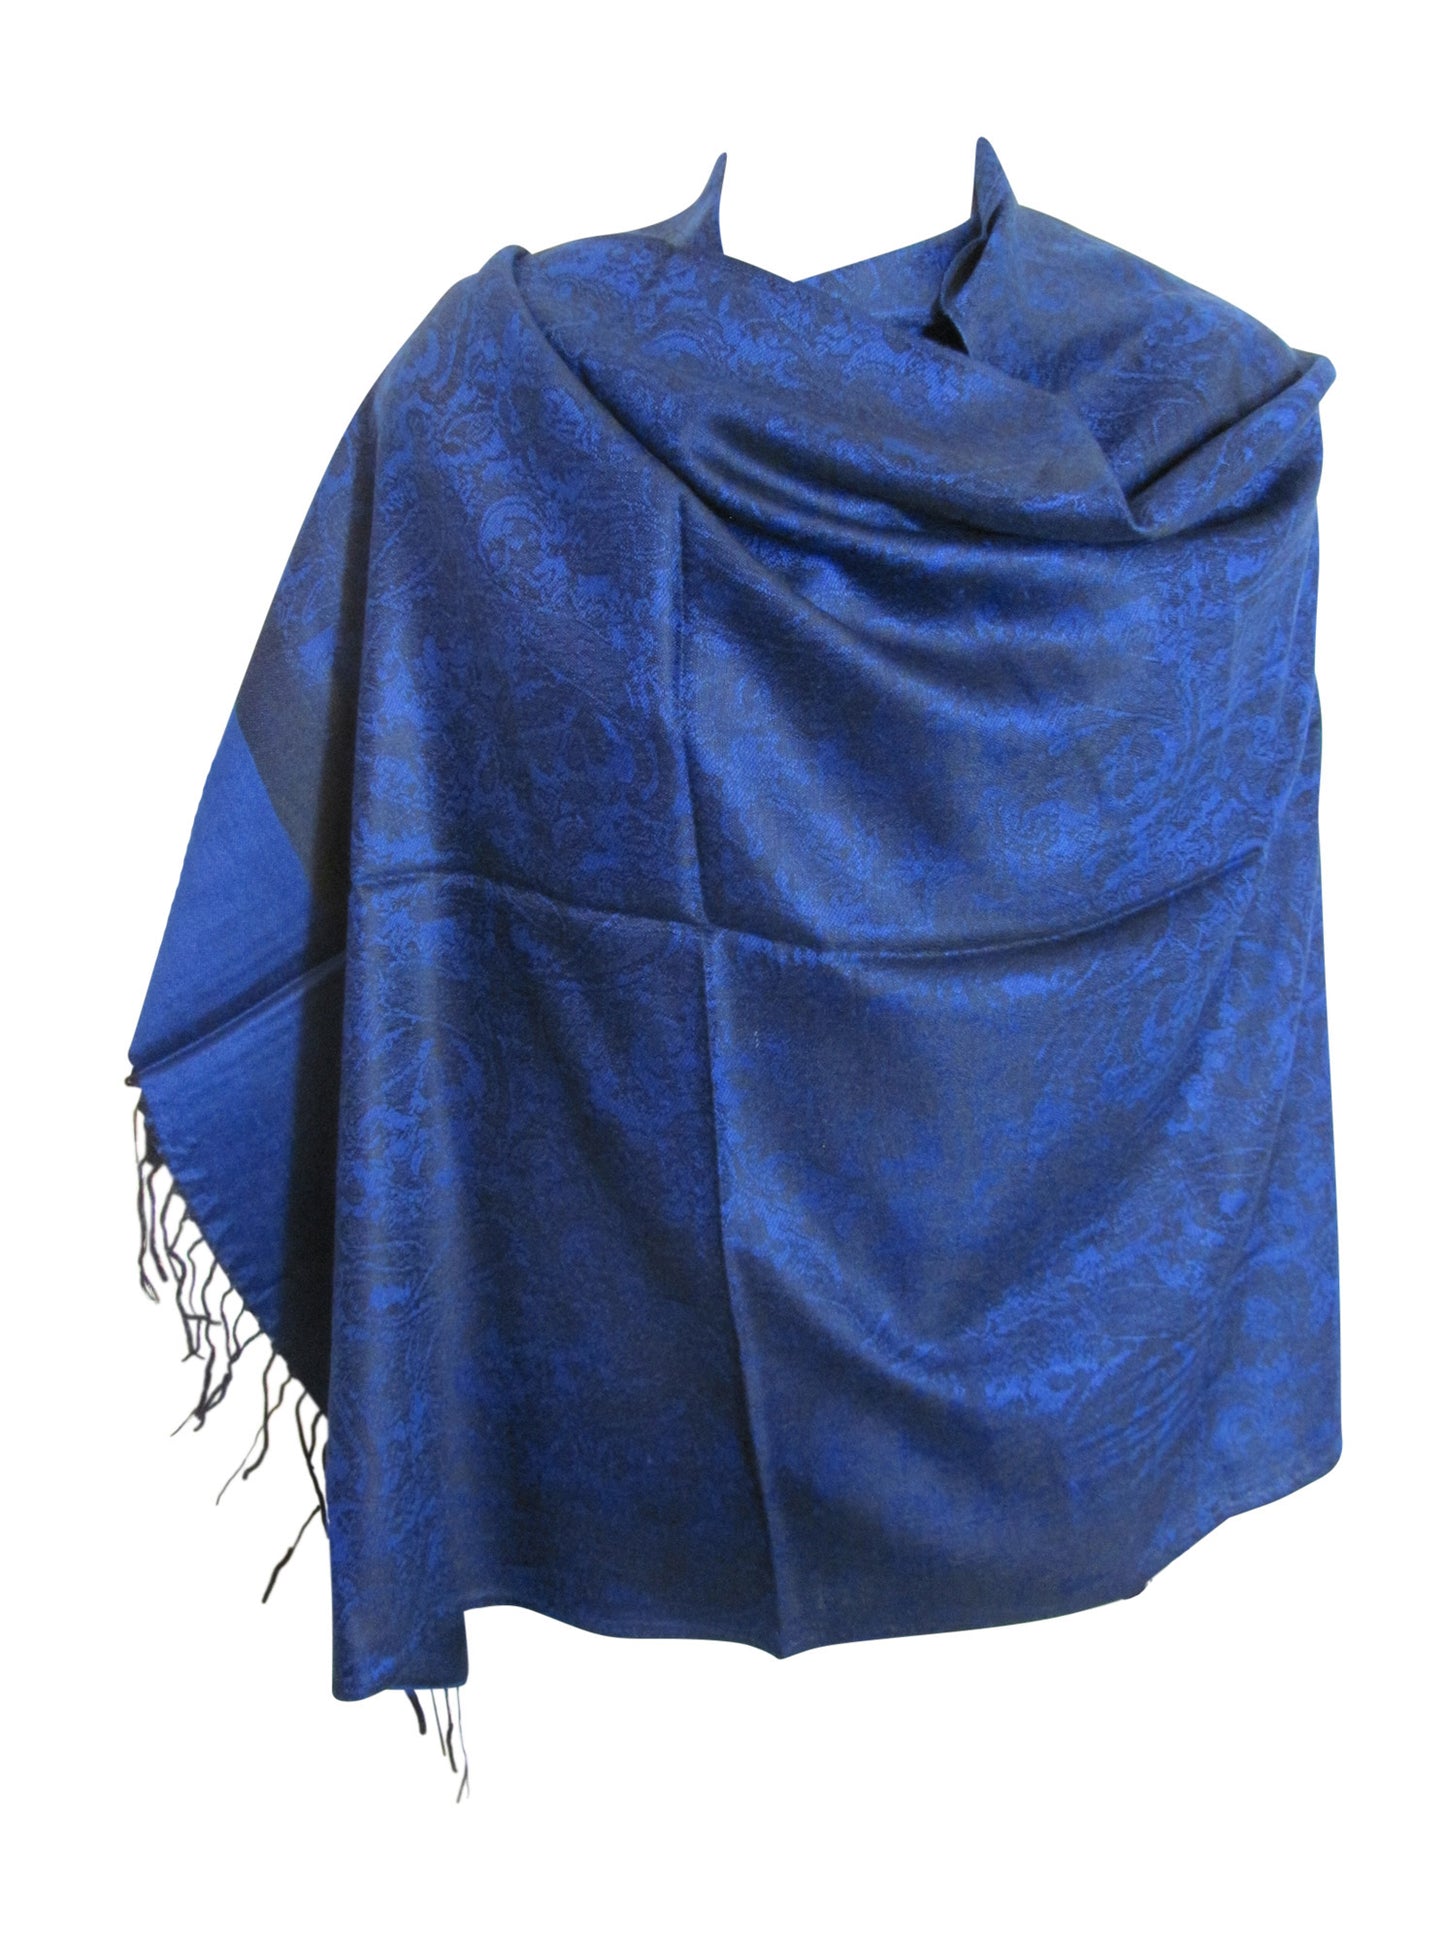 Reversible Jacquard Blue Paisley Fringe Pashmina Silk Scarf Shawl - Ambali Fashion Pashminas 